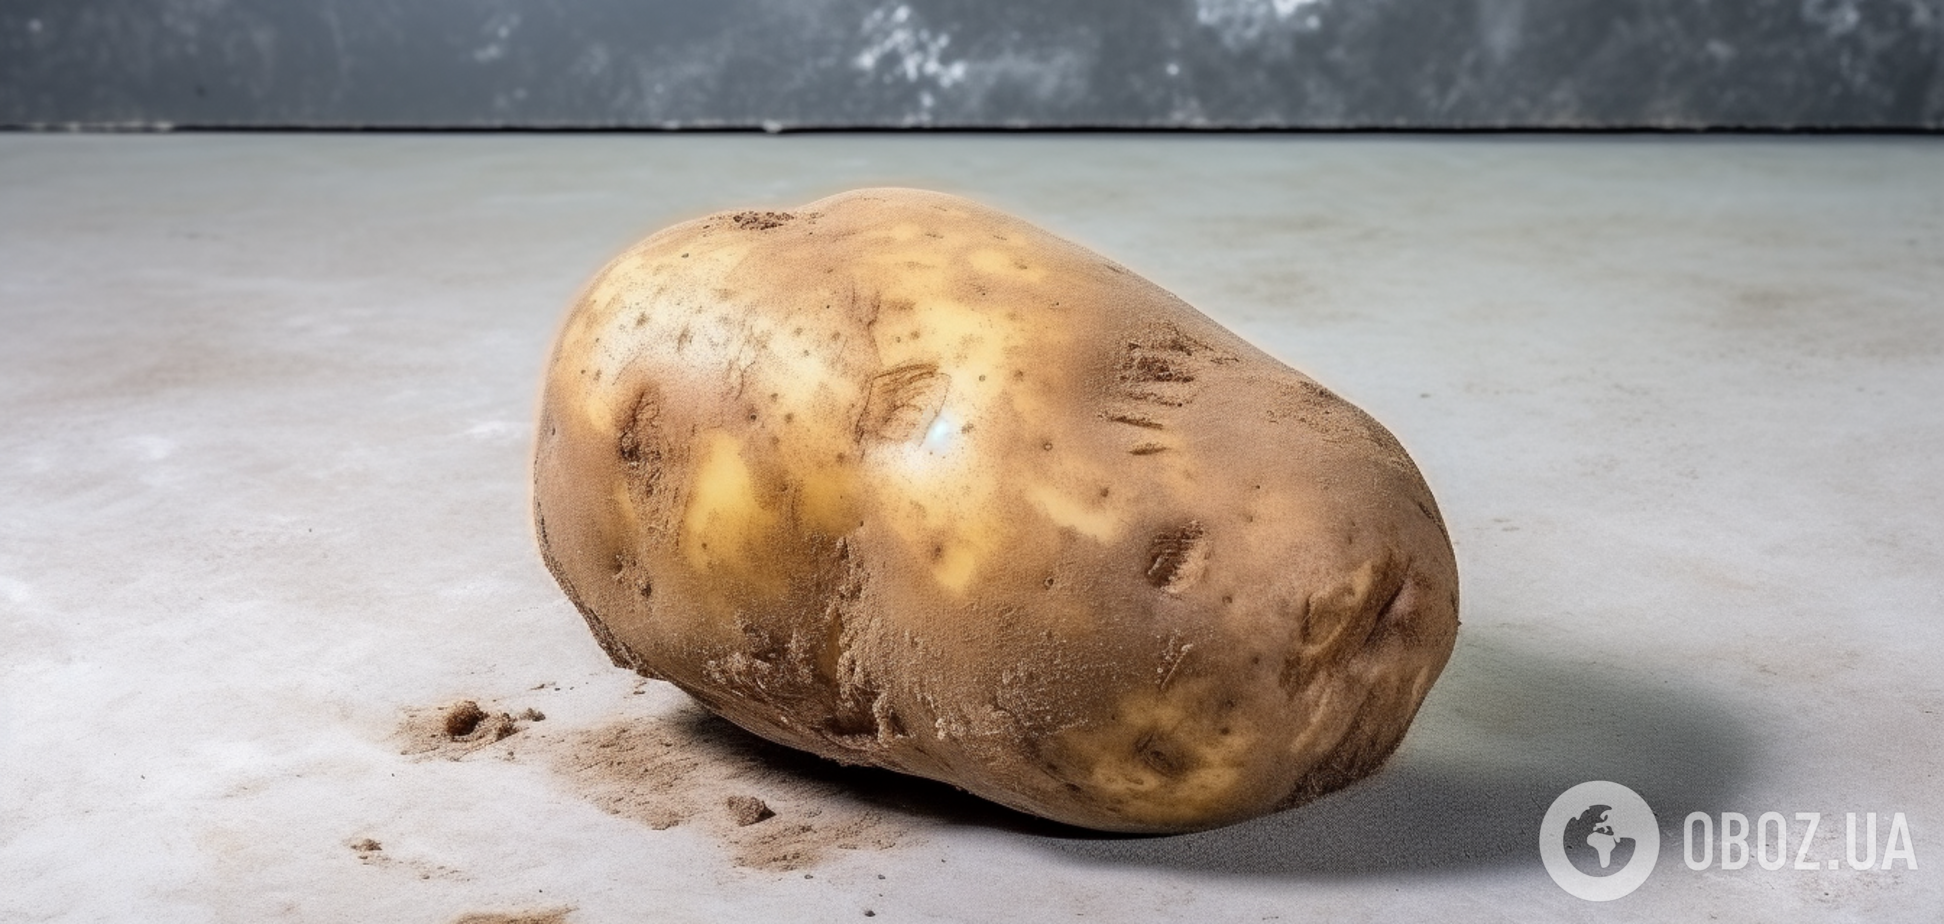 Как спасти урожай: что делать, если картофель в погребе начал гнить